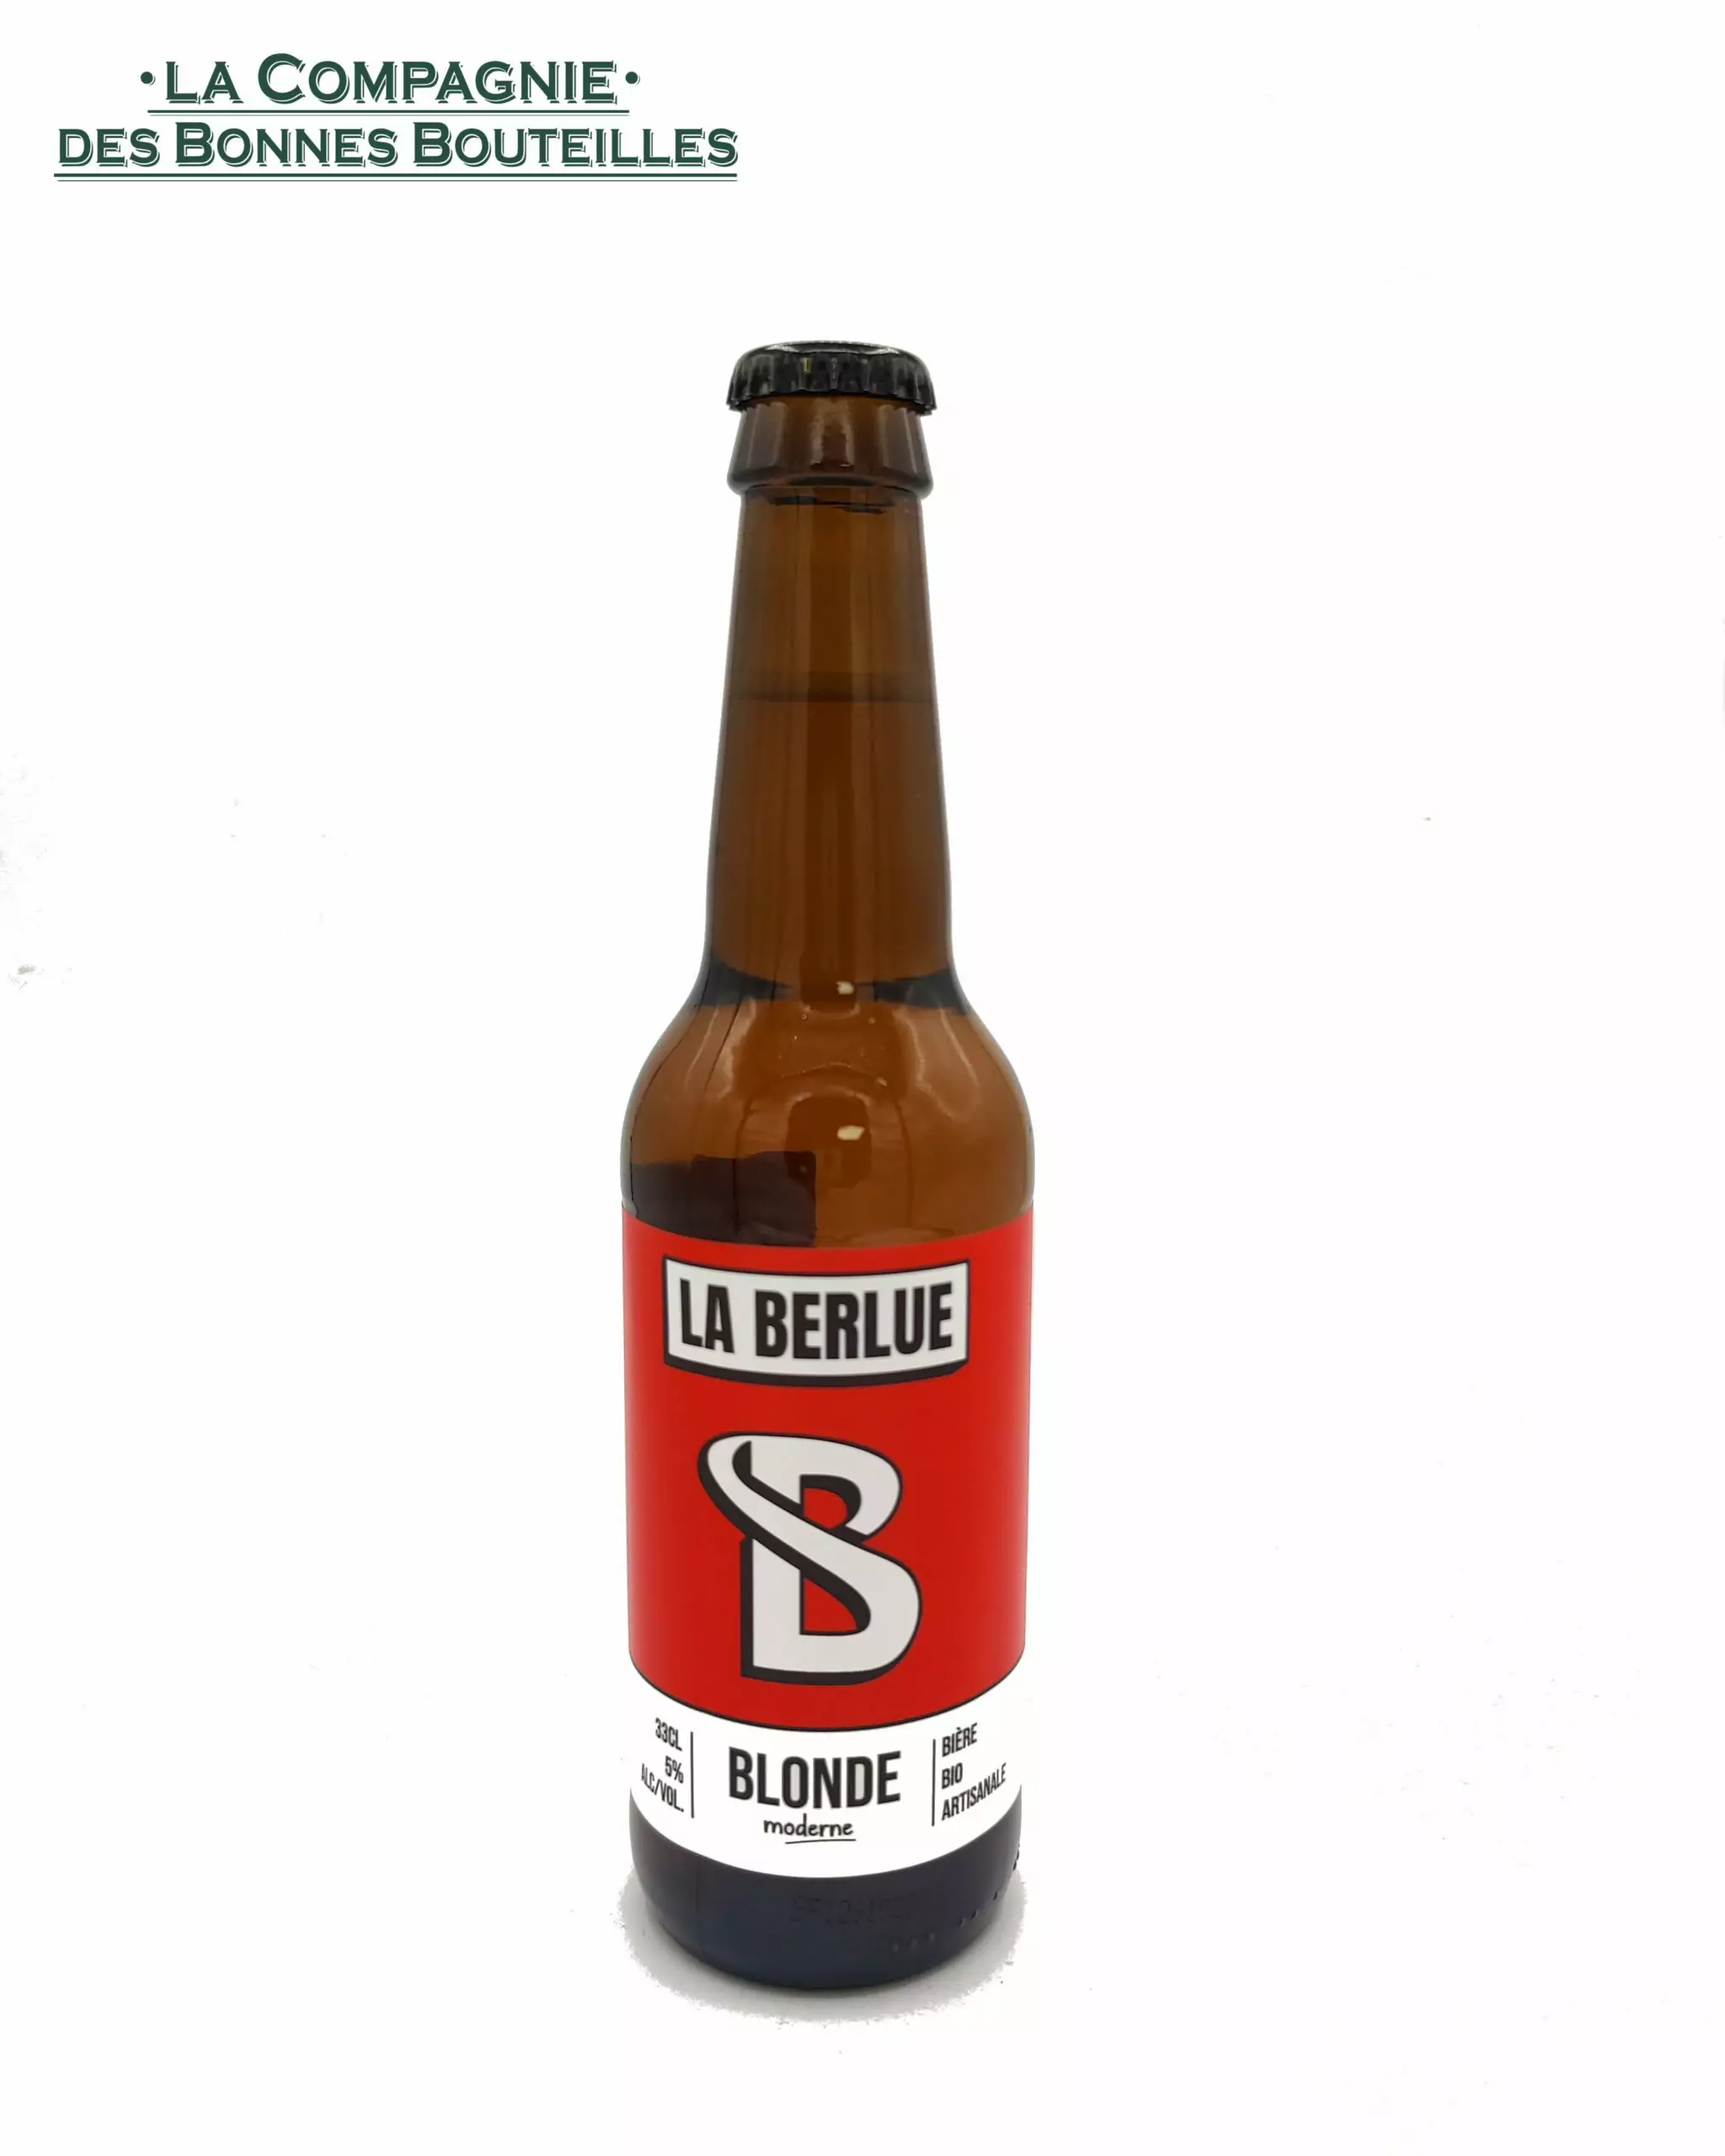 Bière La Berlue Blonde Moderne VP 33cl